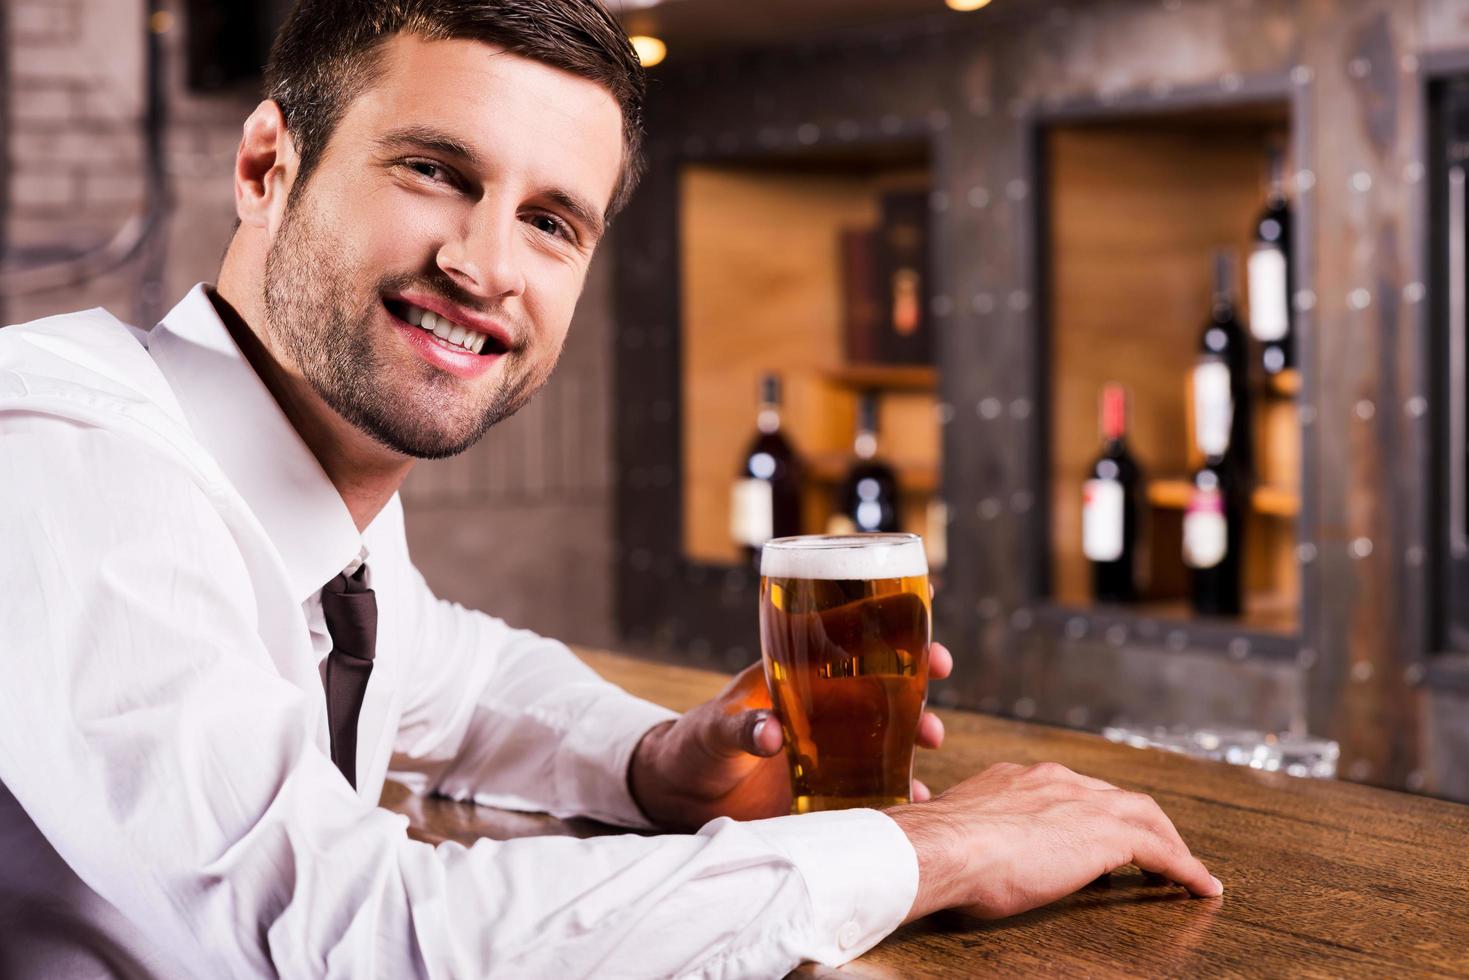 profiter de la bière froide et fraîche. vue latérale d'un beau jeune homme en chemise et cravate tenant un verre de bière et souriant assis au comptoir du bar photo